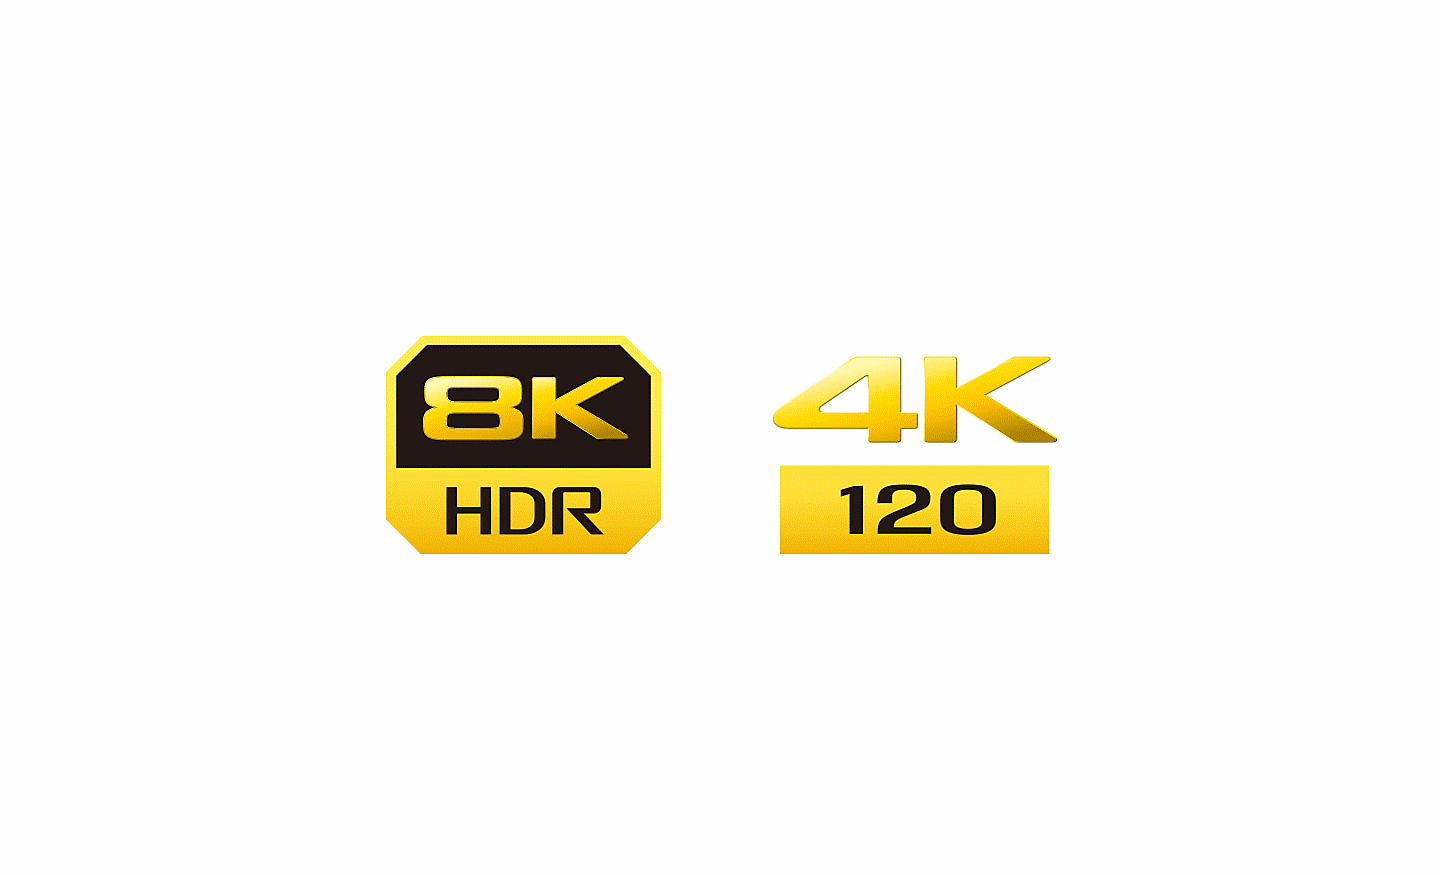 Logotip 8K HDR, 4K 120